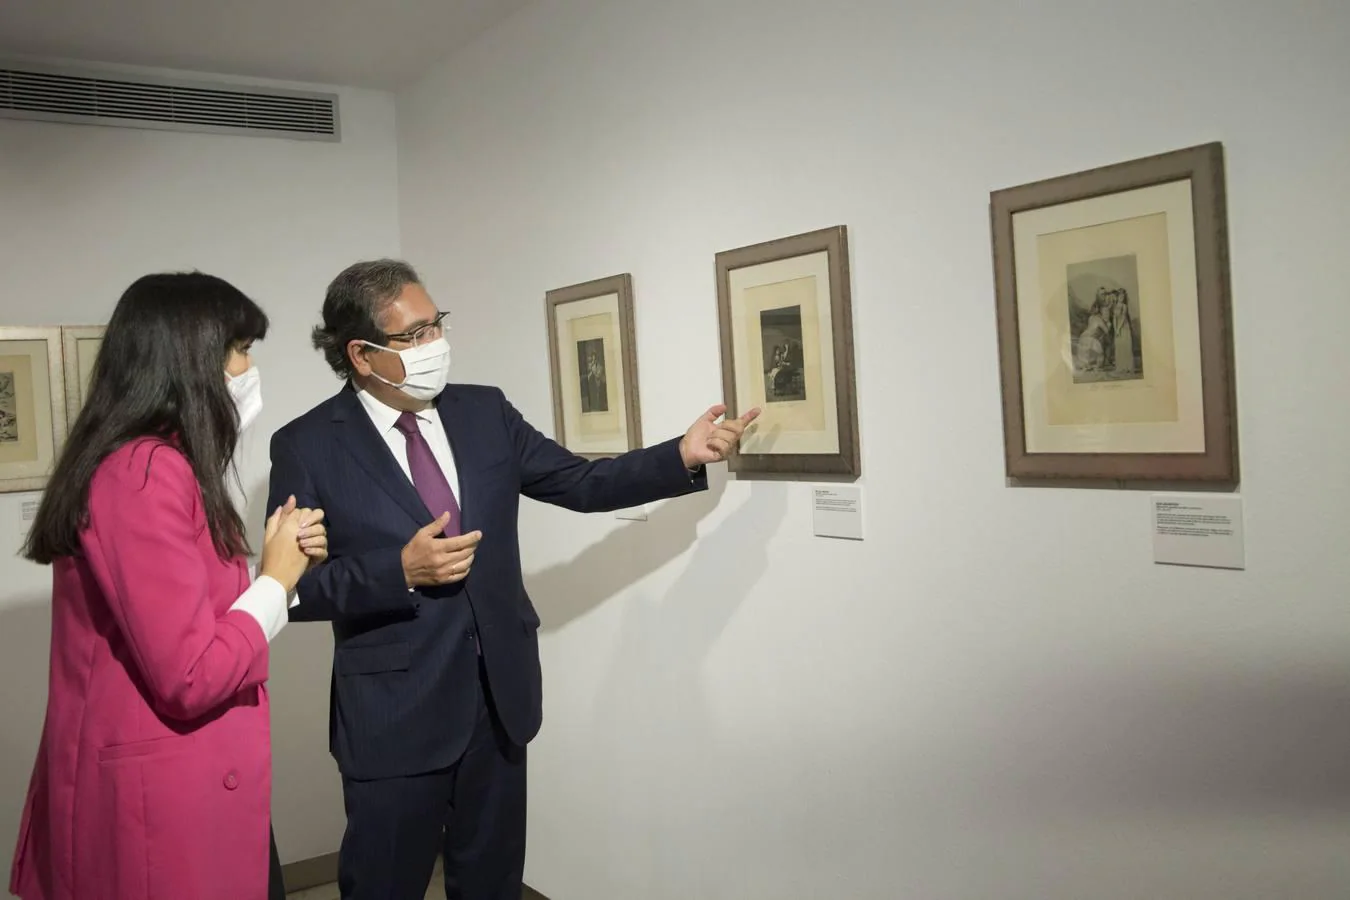 La Fundación Cajasol presenta la mirada reflexiva de Goya sobre la mujer de su época